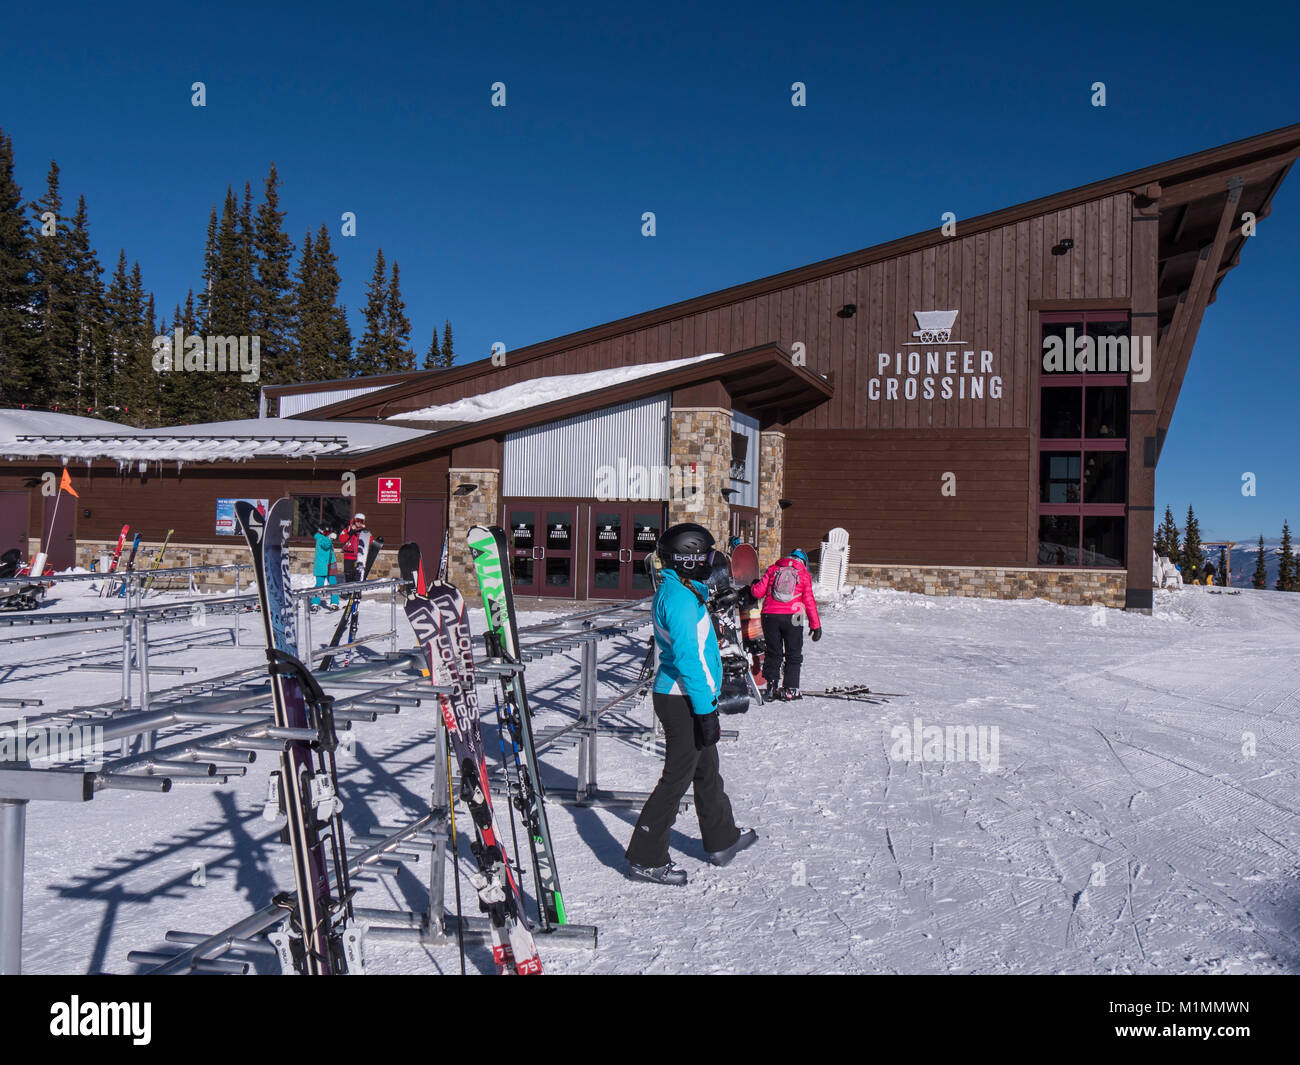 Pioneer attraversando giorno Lodge e ristorante in cima al picco 7, Breckenridge Ski Resort, Breckenridge, Colorado. Foto Stock